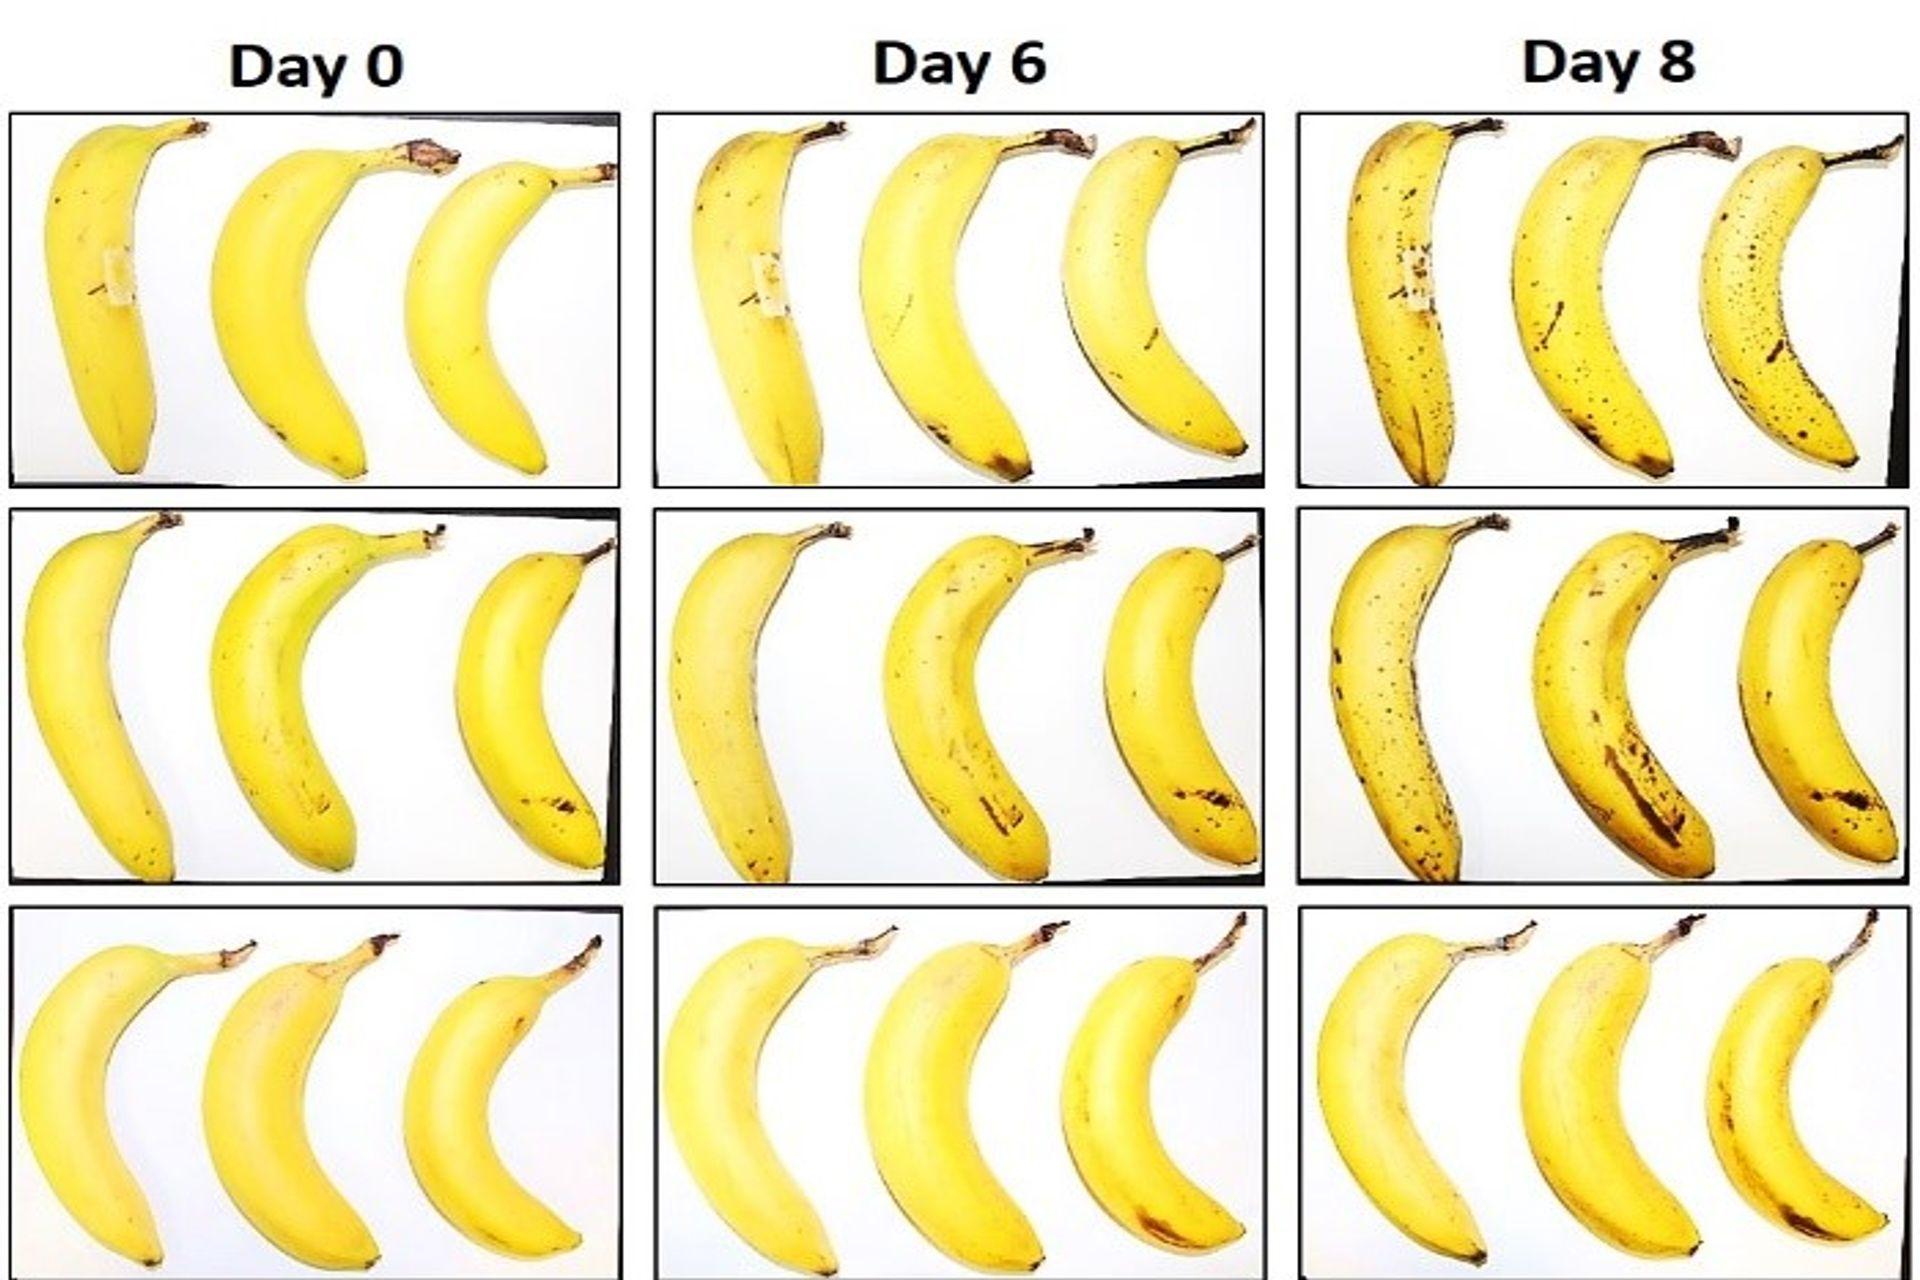 Tri banane koje su EMPA i Lidl Švicarska podvrgle testu konzervacije sa i bez omotača od vlaknaste celuloze nakon 6, 8 i XNUMX dana